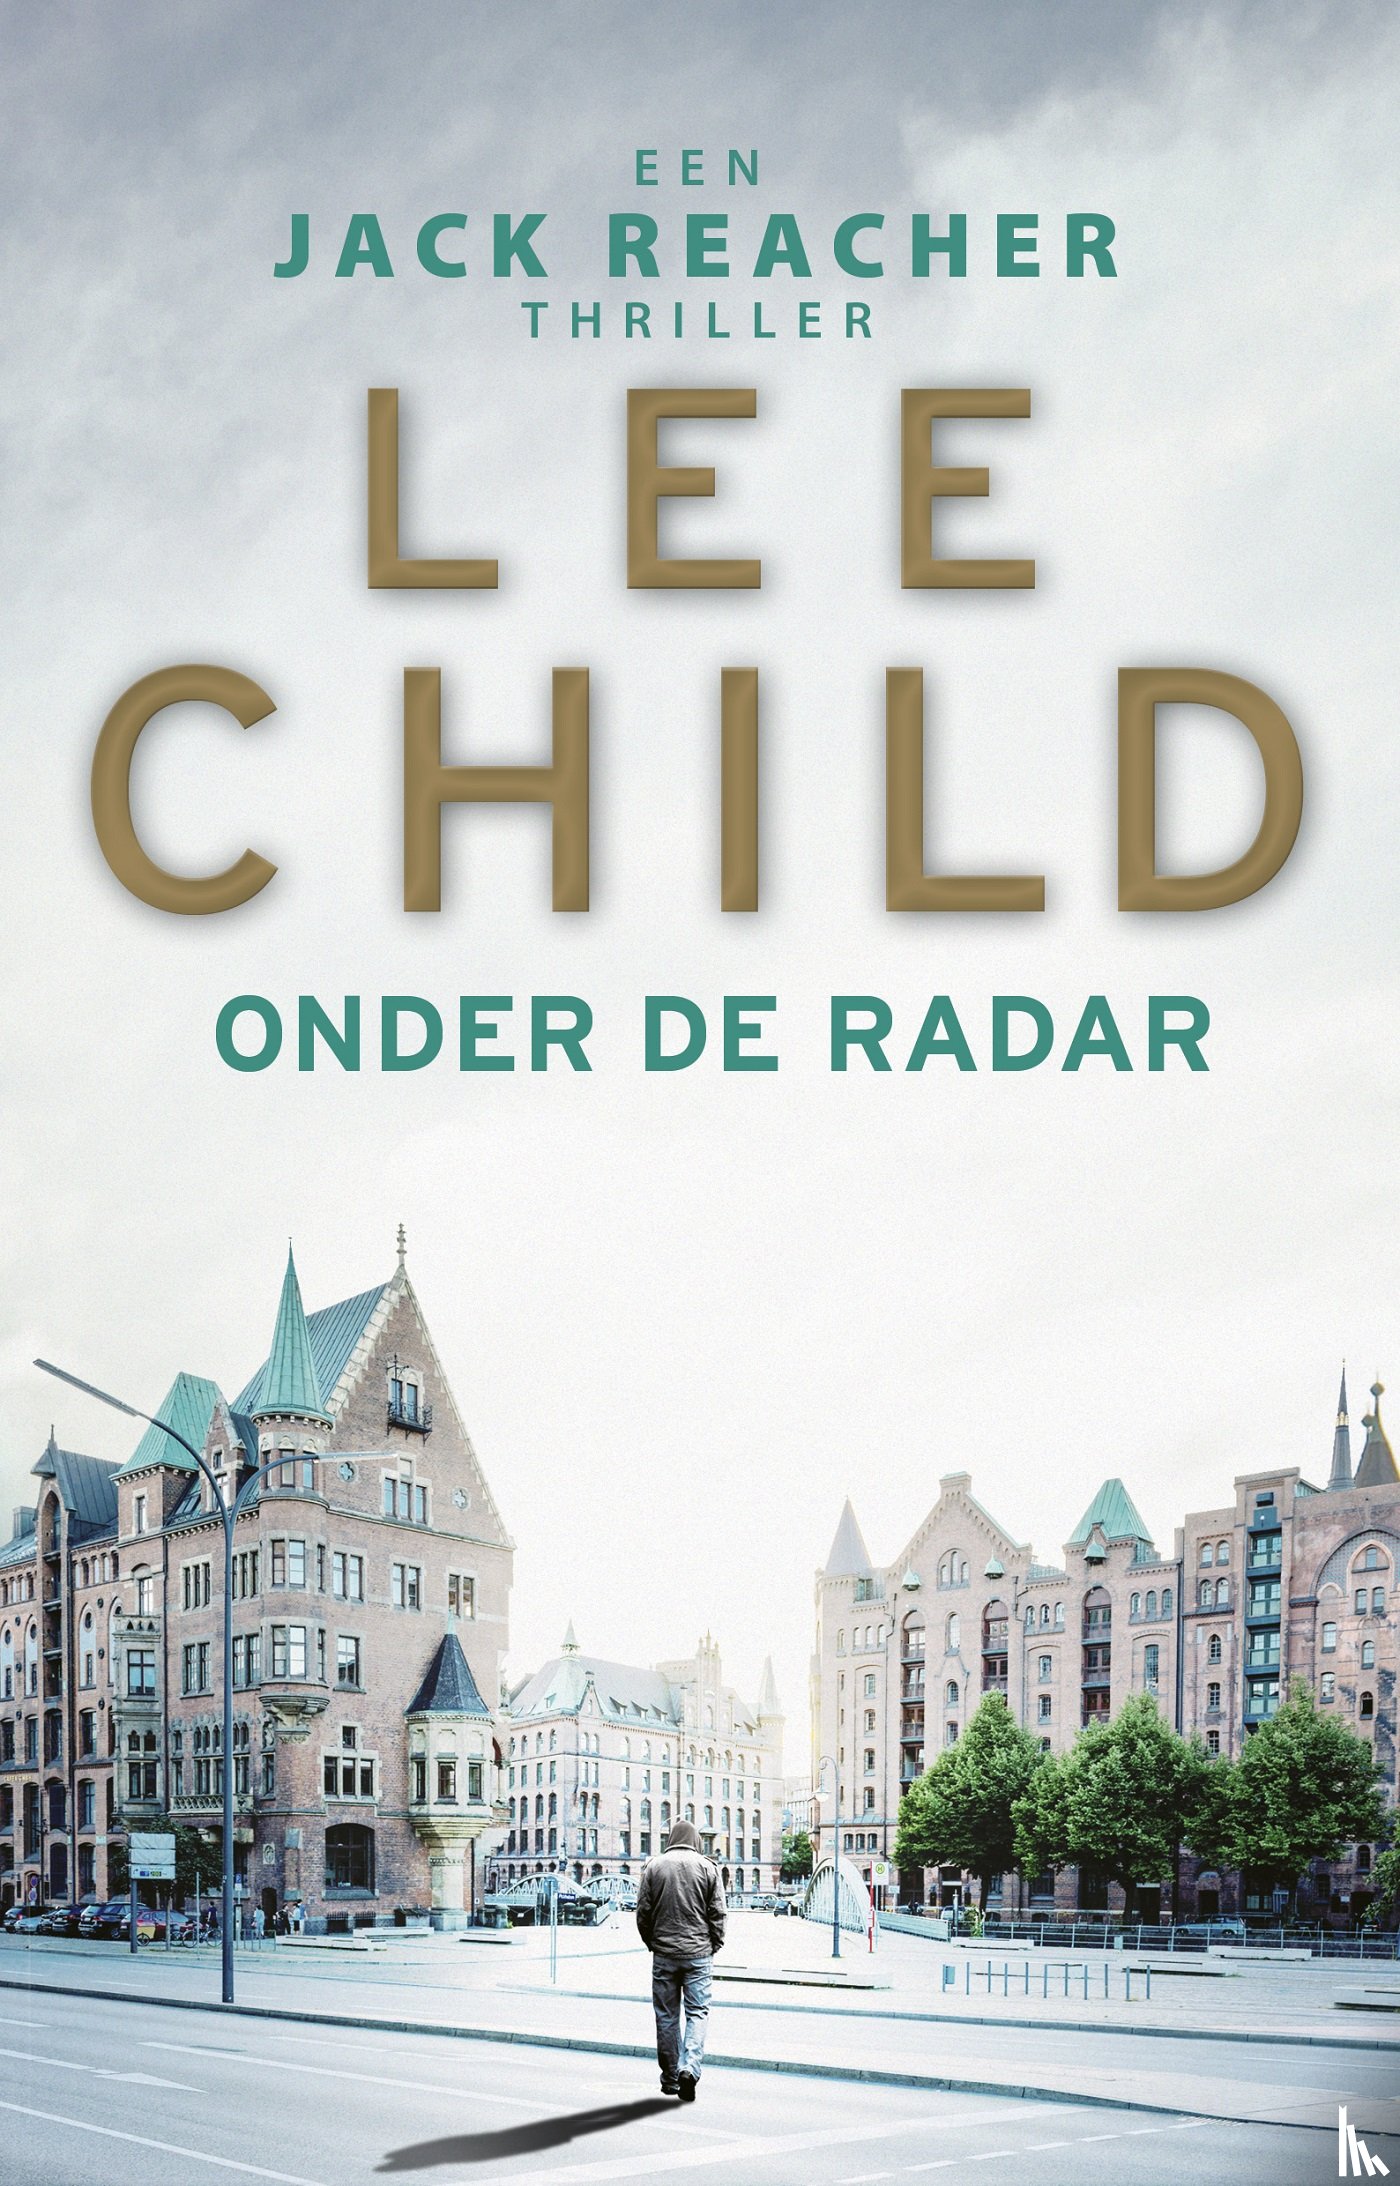 Child, Lee - Onder de radar